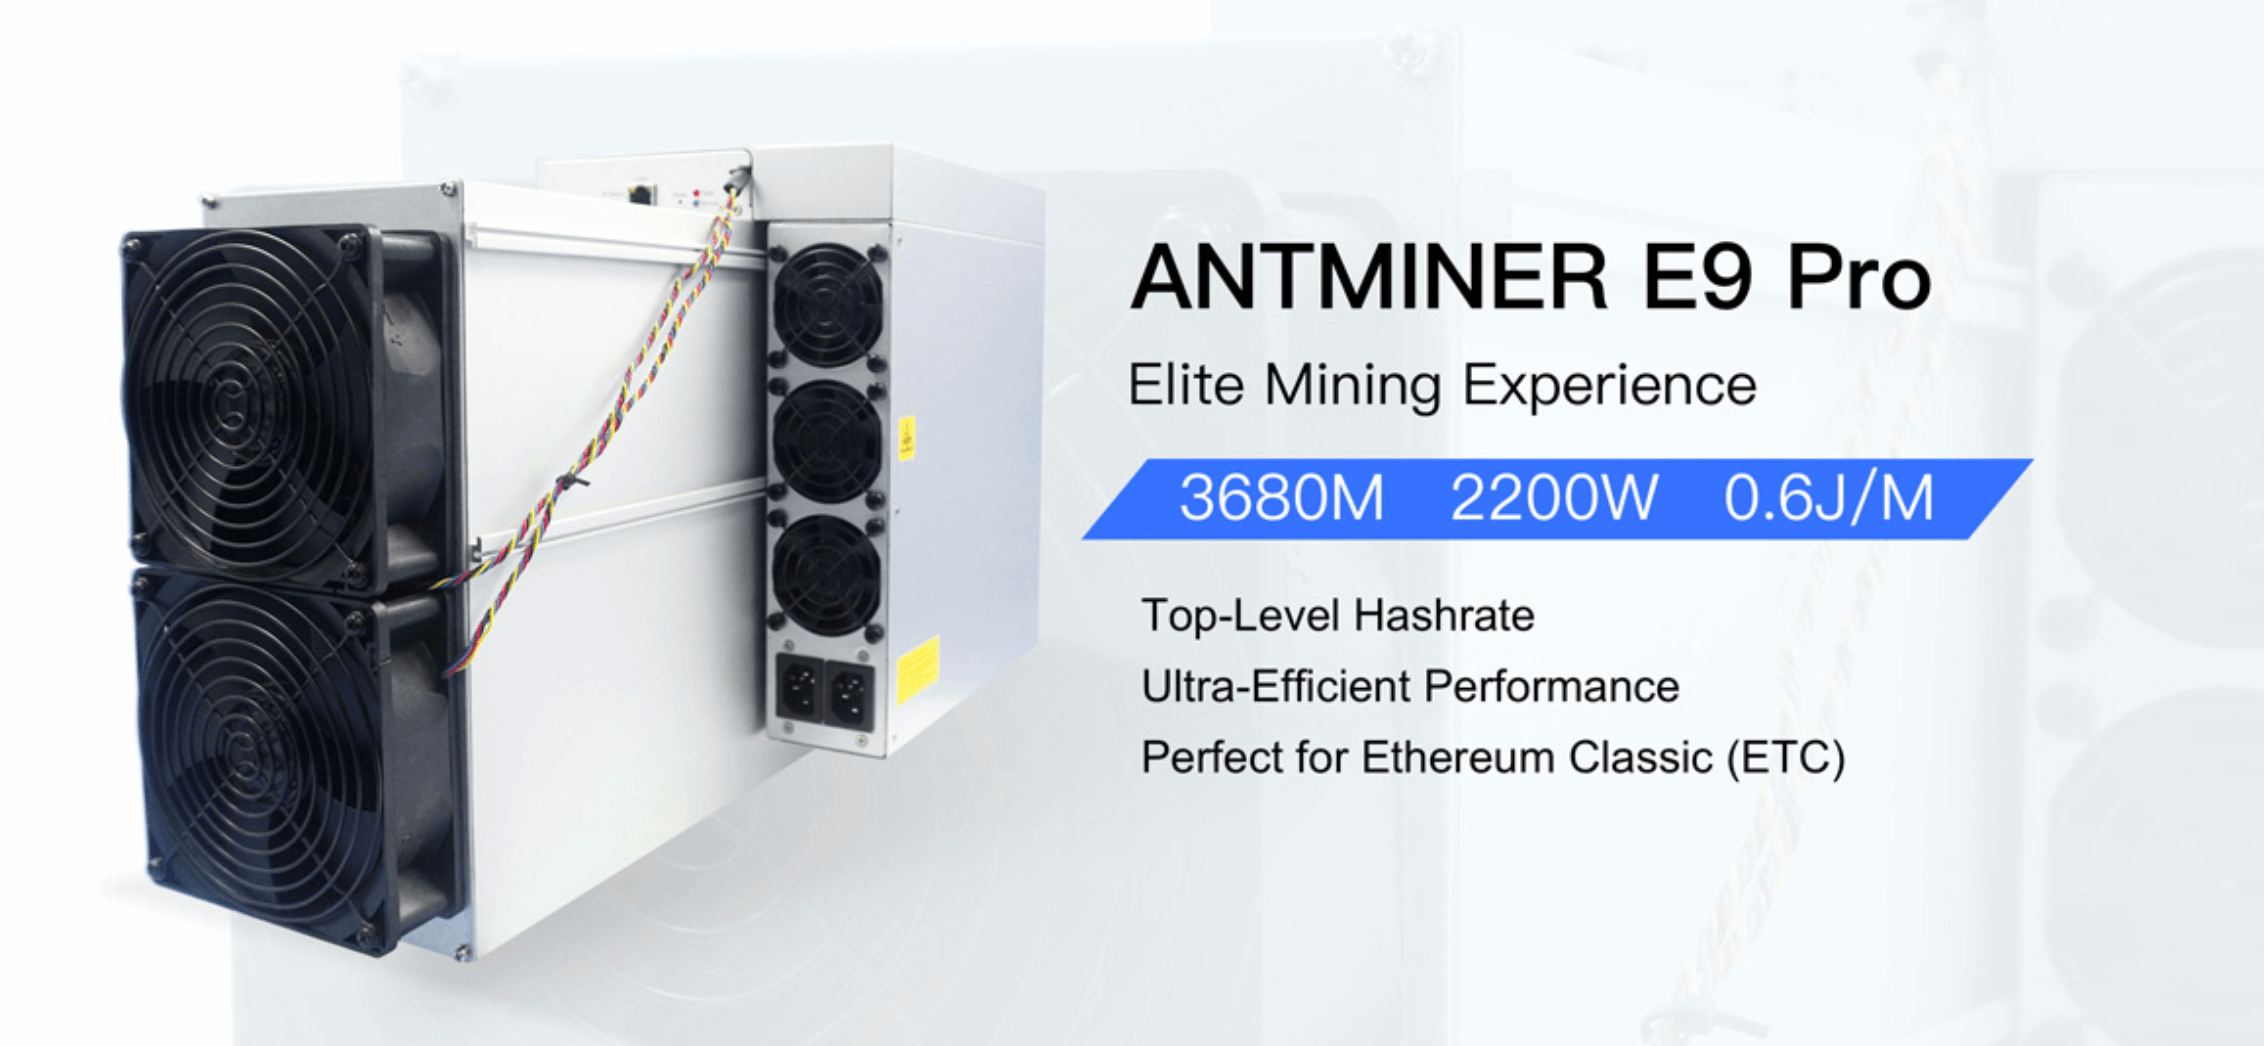 Особенности Antminer E9 Pro. Особенности Antminer E9 Pro от Bitmain. Фото.